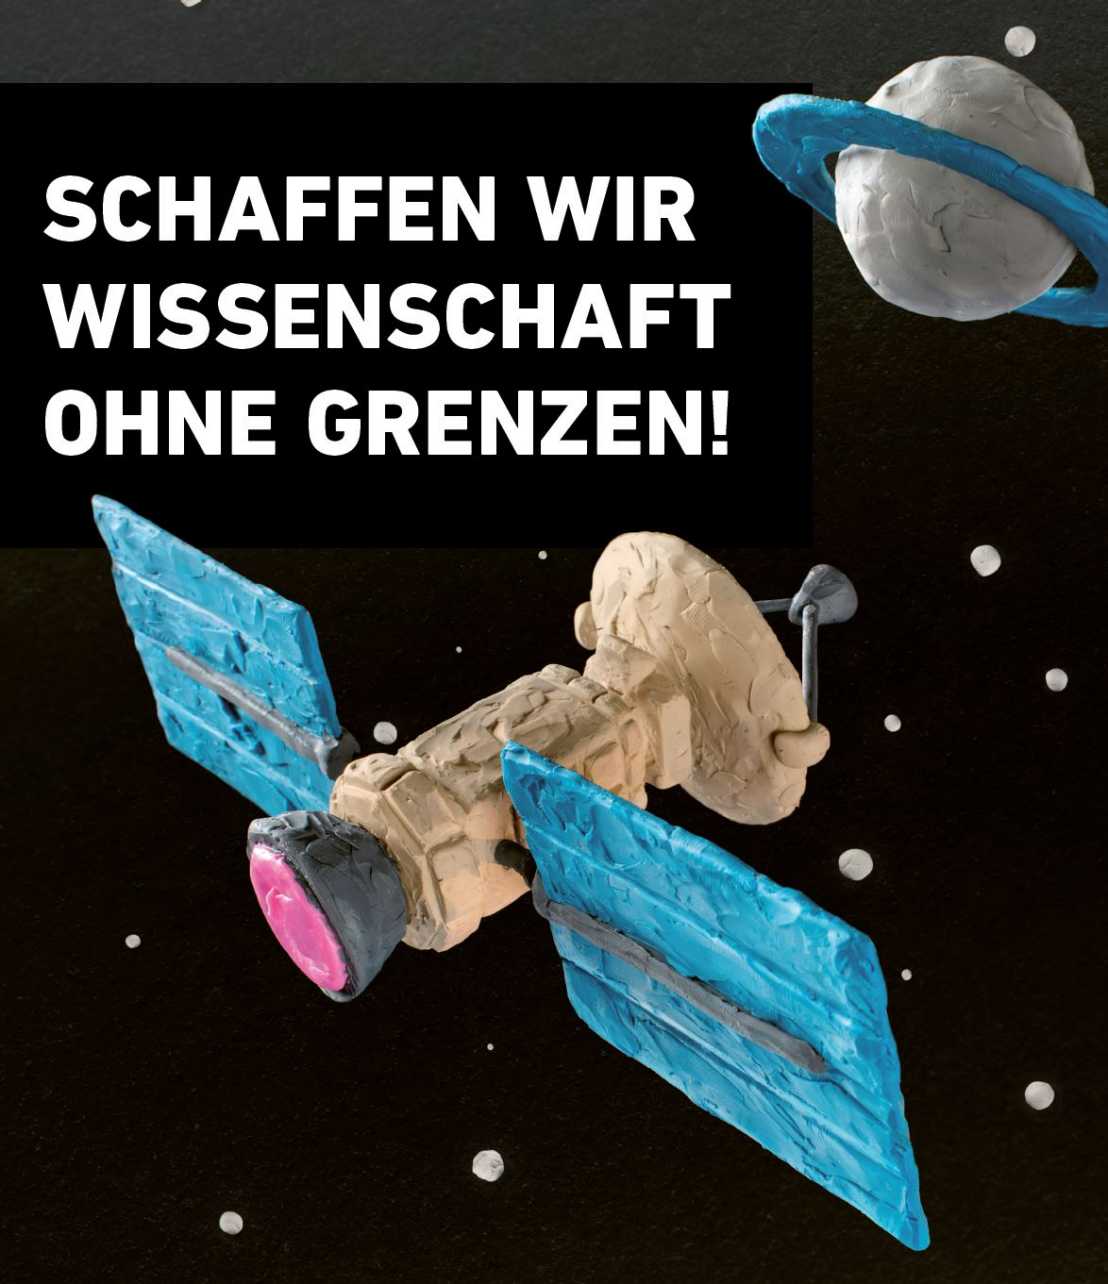 Ein Satellit und Planet aus Plastilin geformt neben dem Slogan "Schaffen wir Wissenschaft ohne Grenzen!"